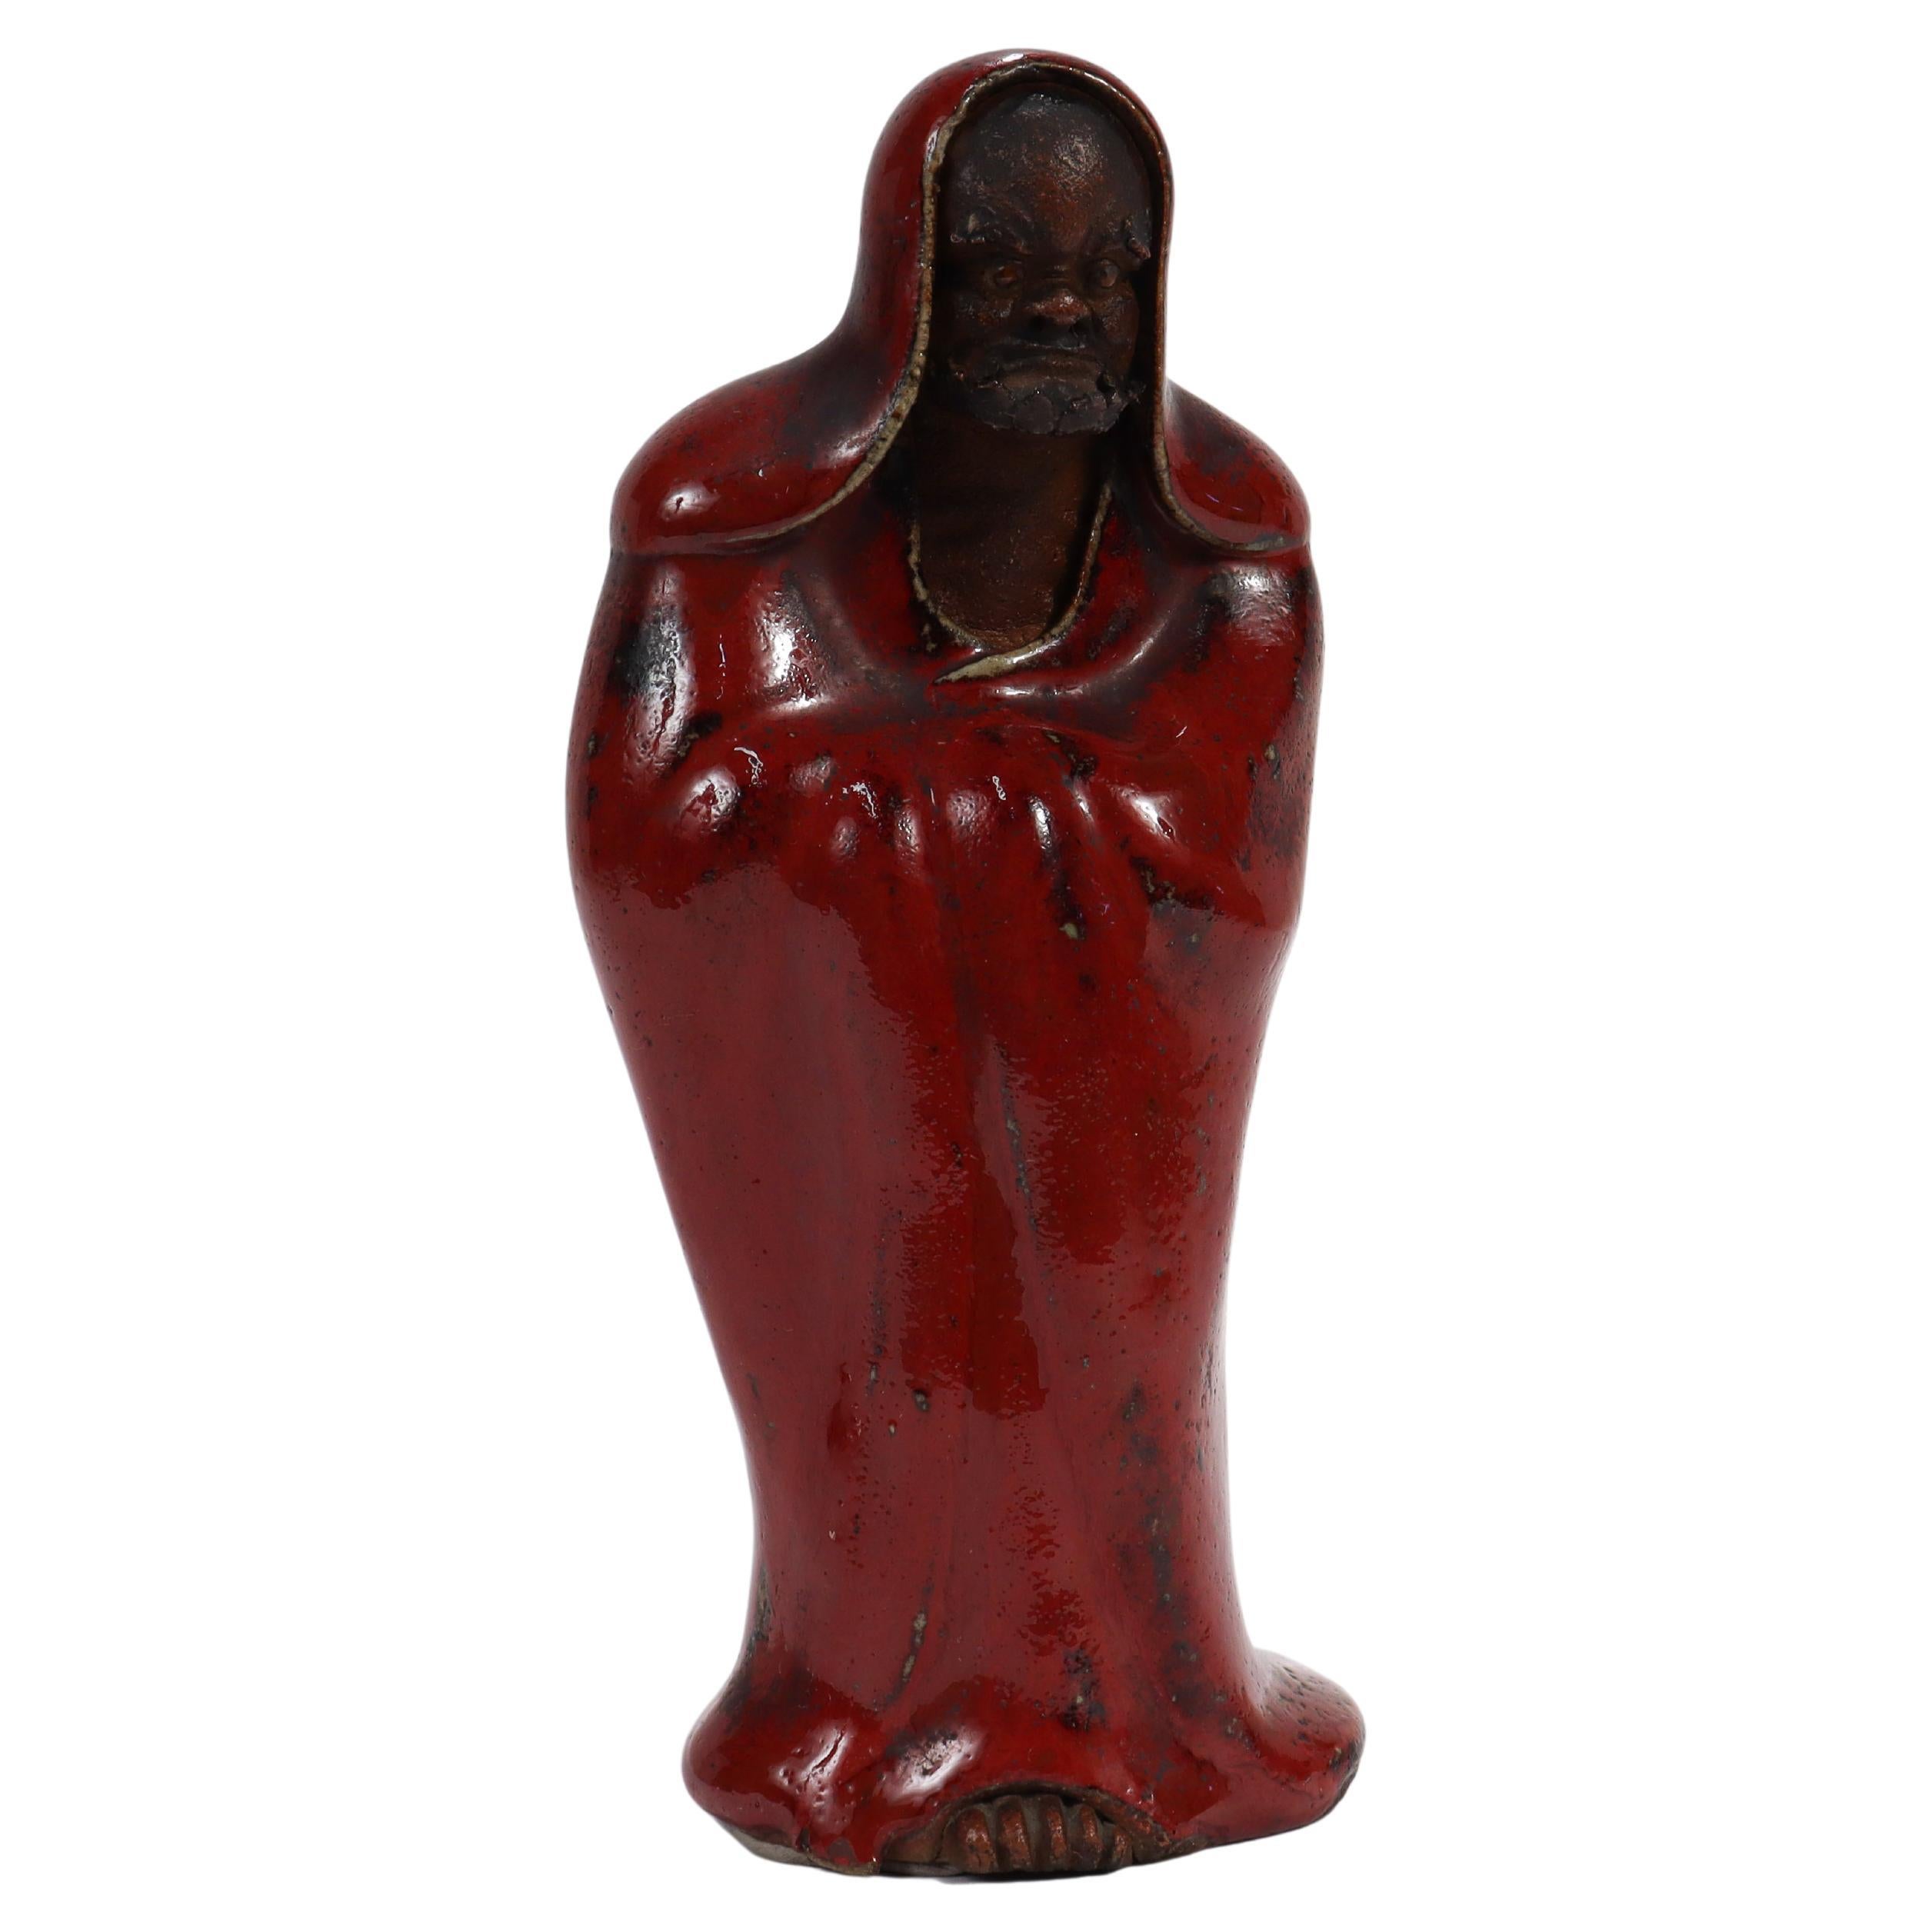 Eine schöne, antike japanische Daruma-Figur aus Keramik.

In Form eines Daruma, einer Darstellung von Bodhidharma, dem halb-legendären Gründer des Zen/Chan-Buddhismus.

Das Gesicht und die hervorstehenden Zehen der Figur sind unglasiert und